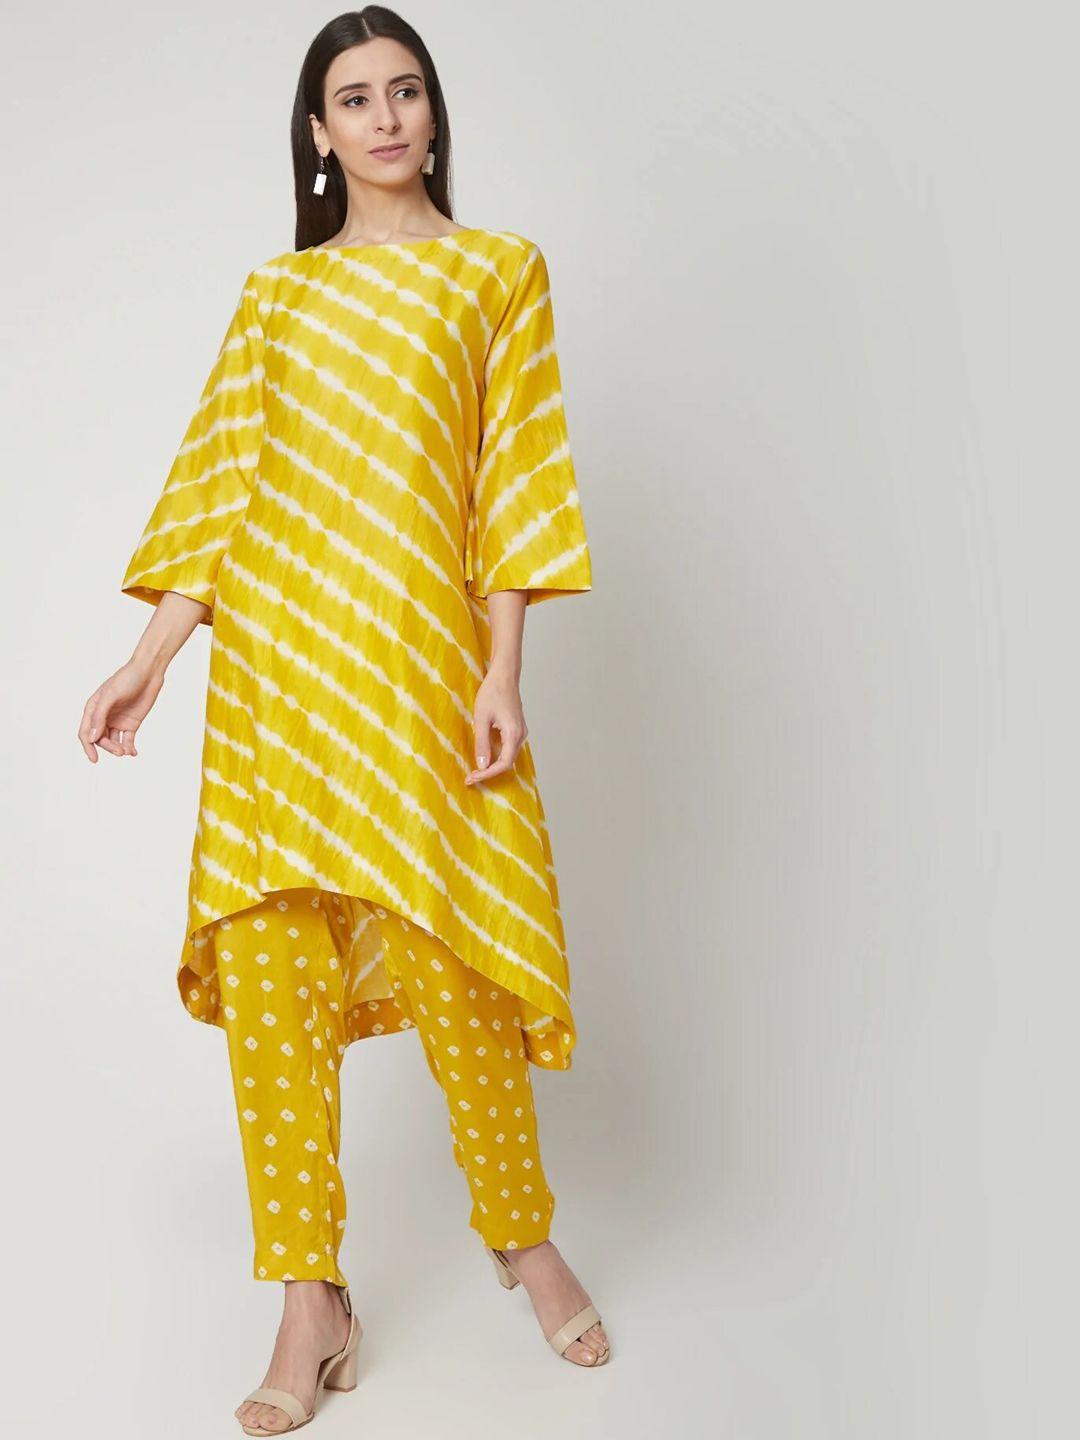 nangalia ruchira women yellow striped pure cotton kurta with trousers